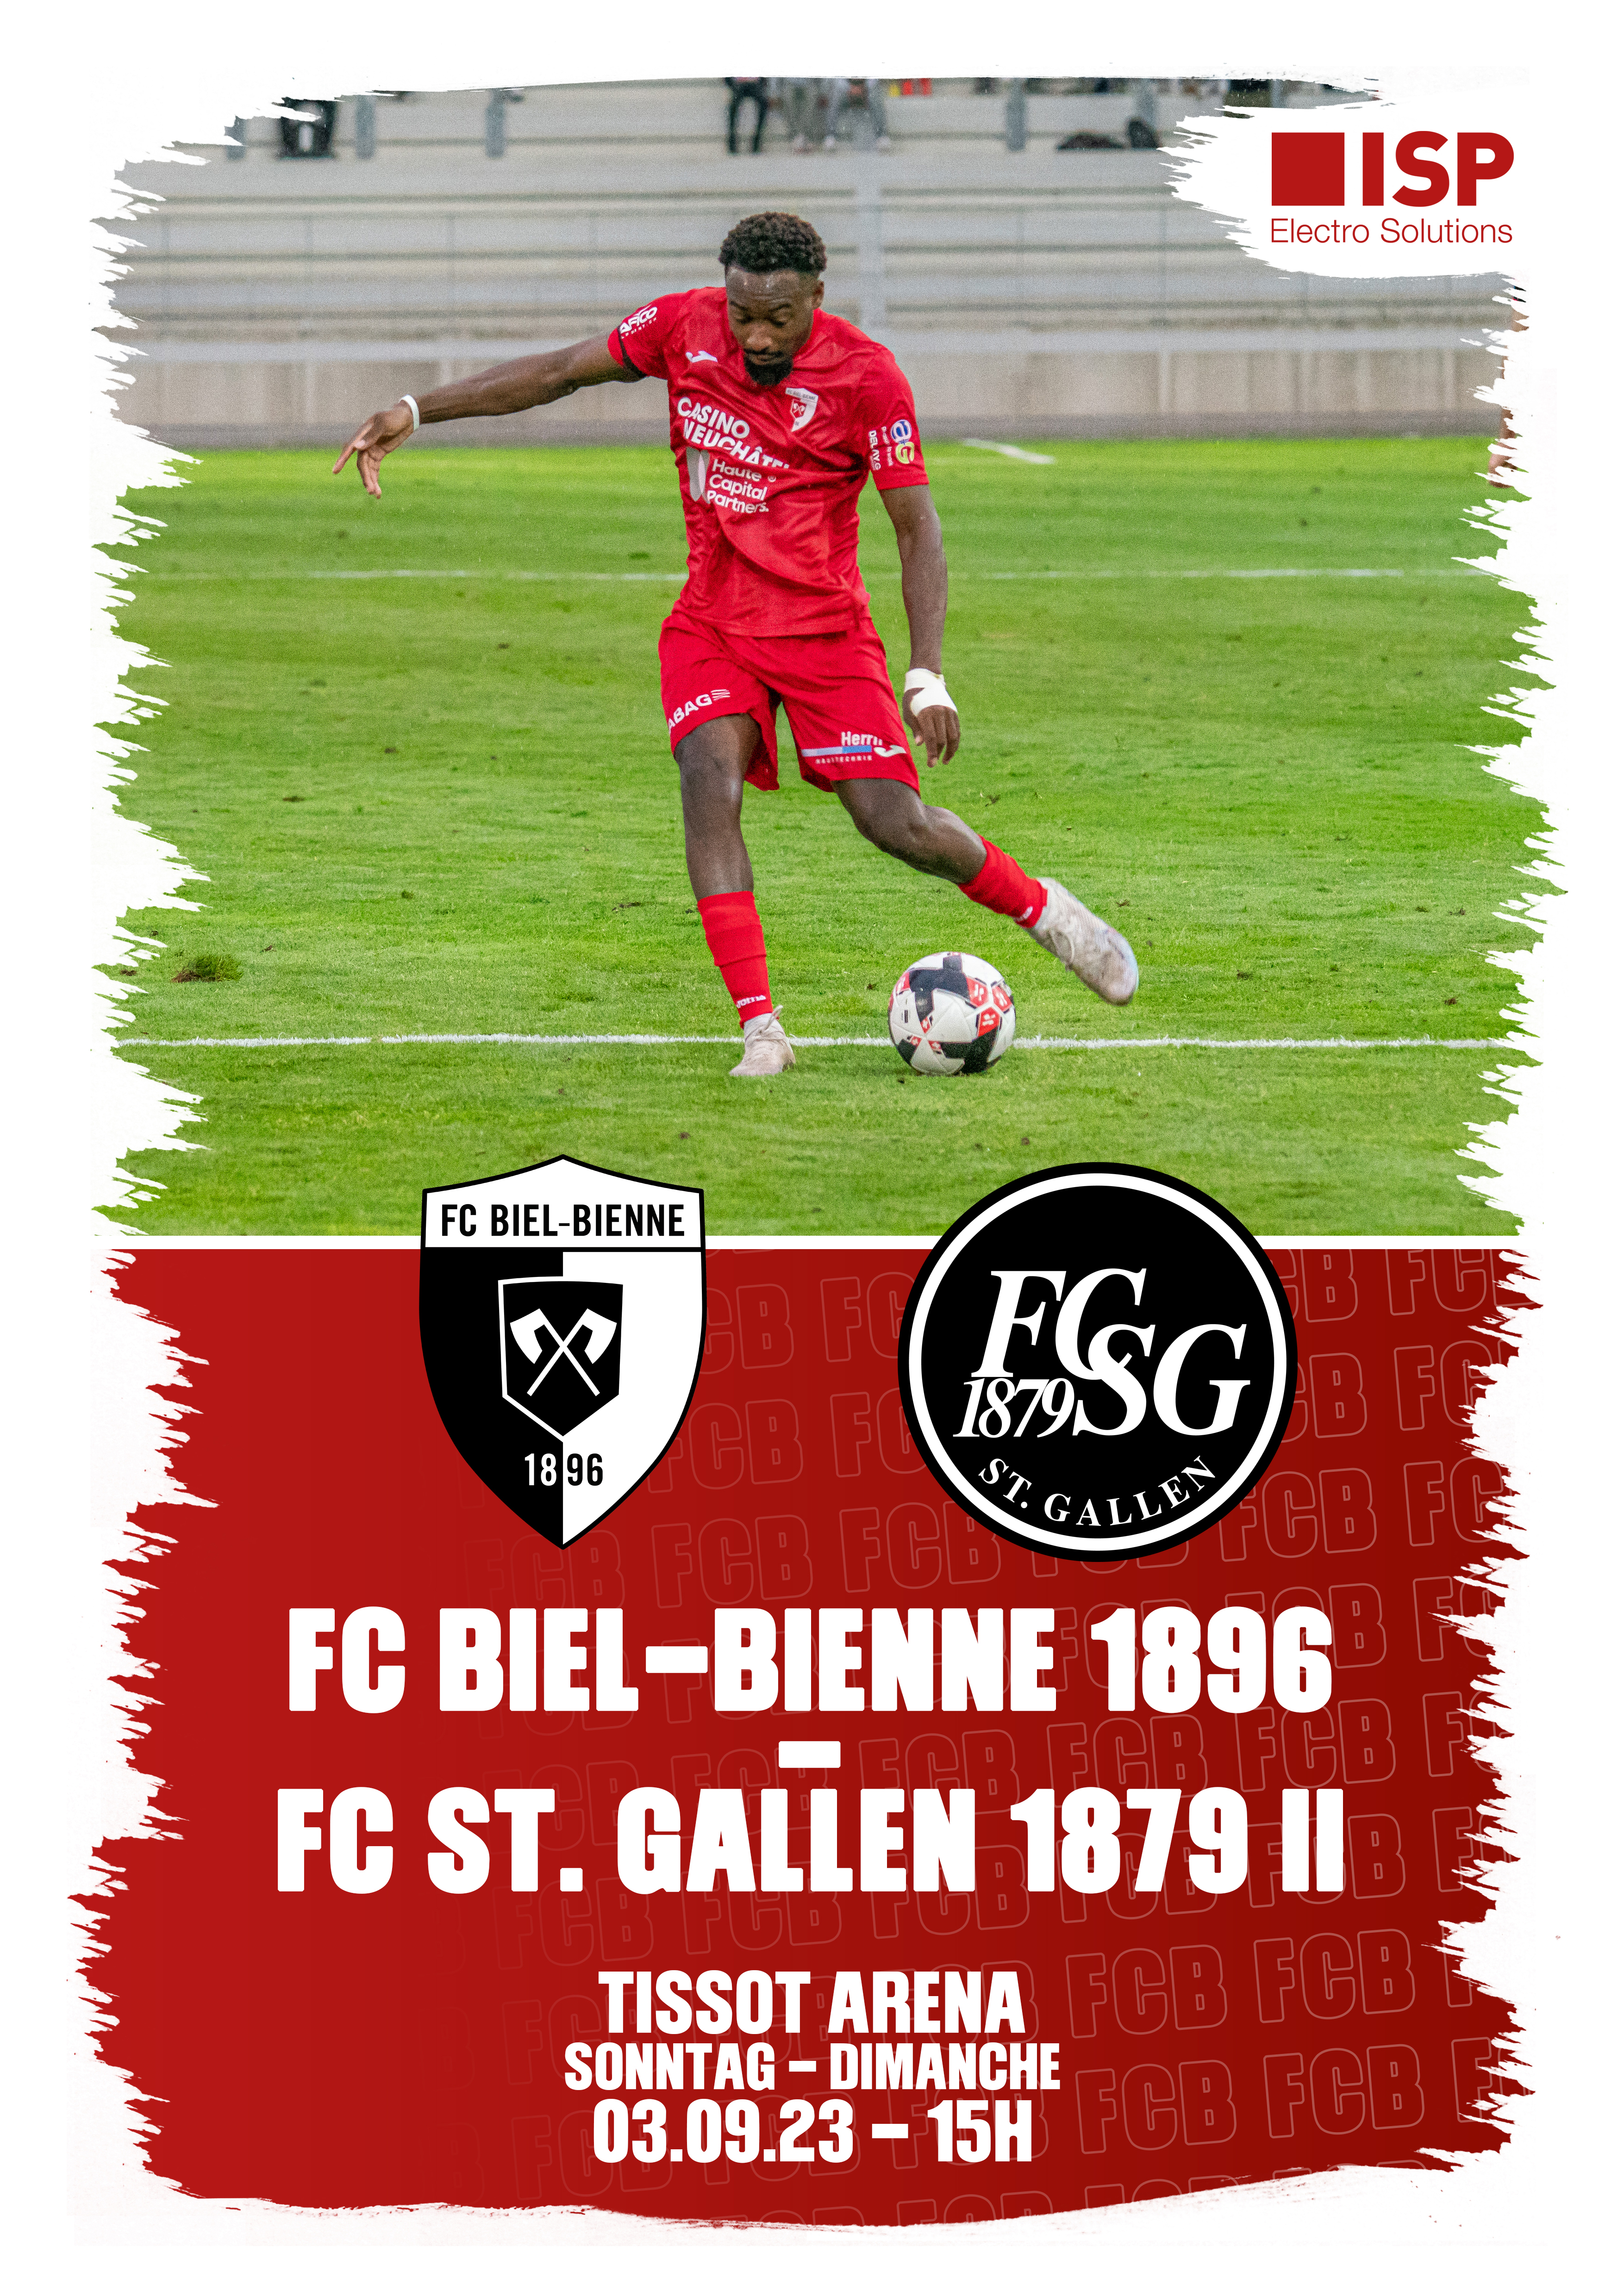 Herzlich willkommen dem FC St. Gallen 1879 II